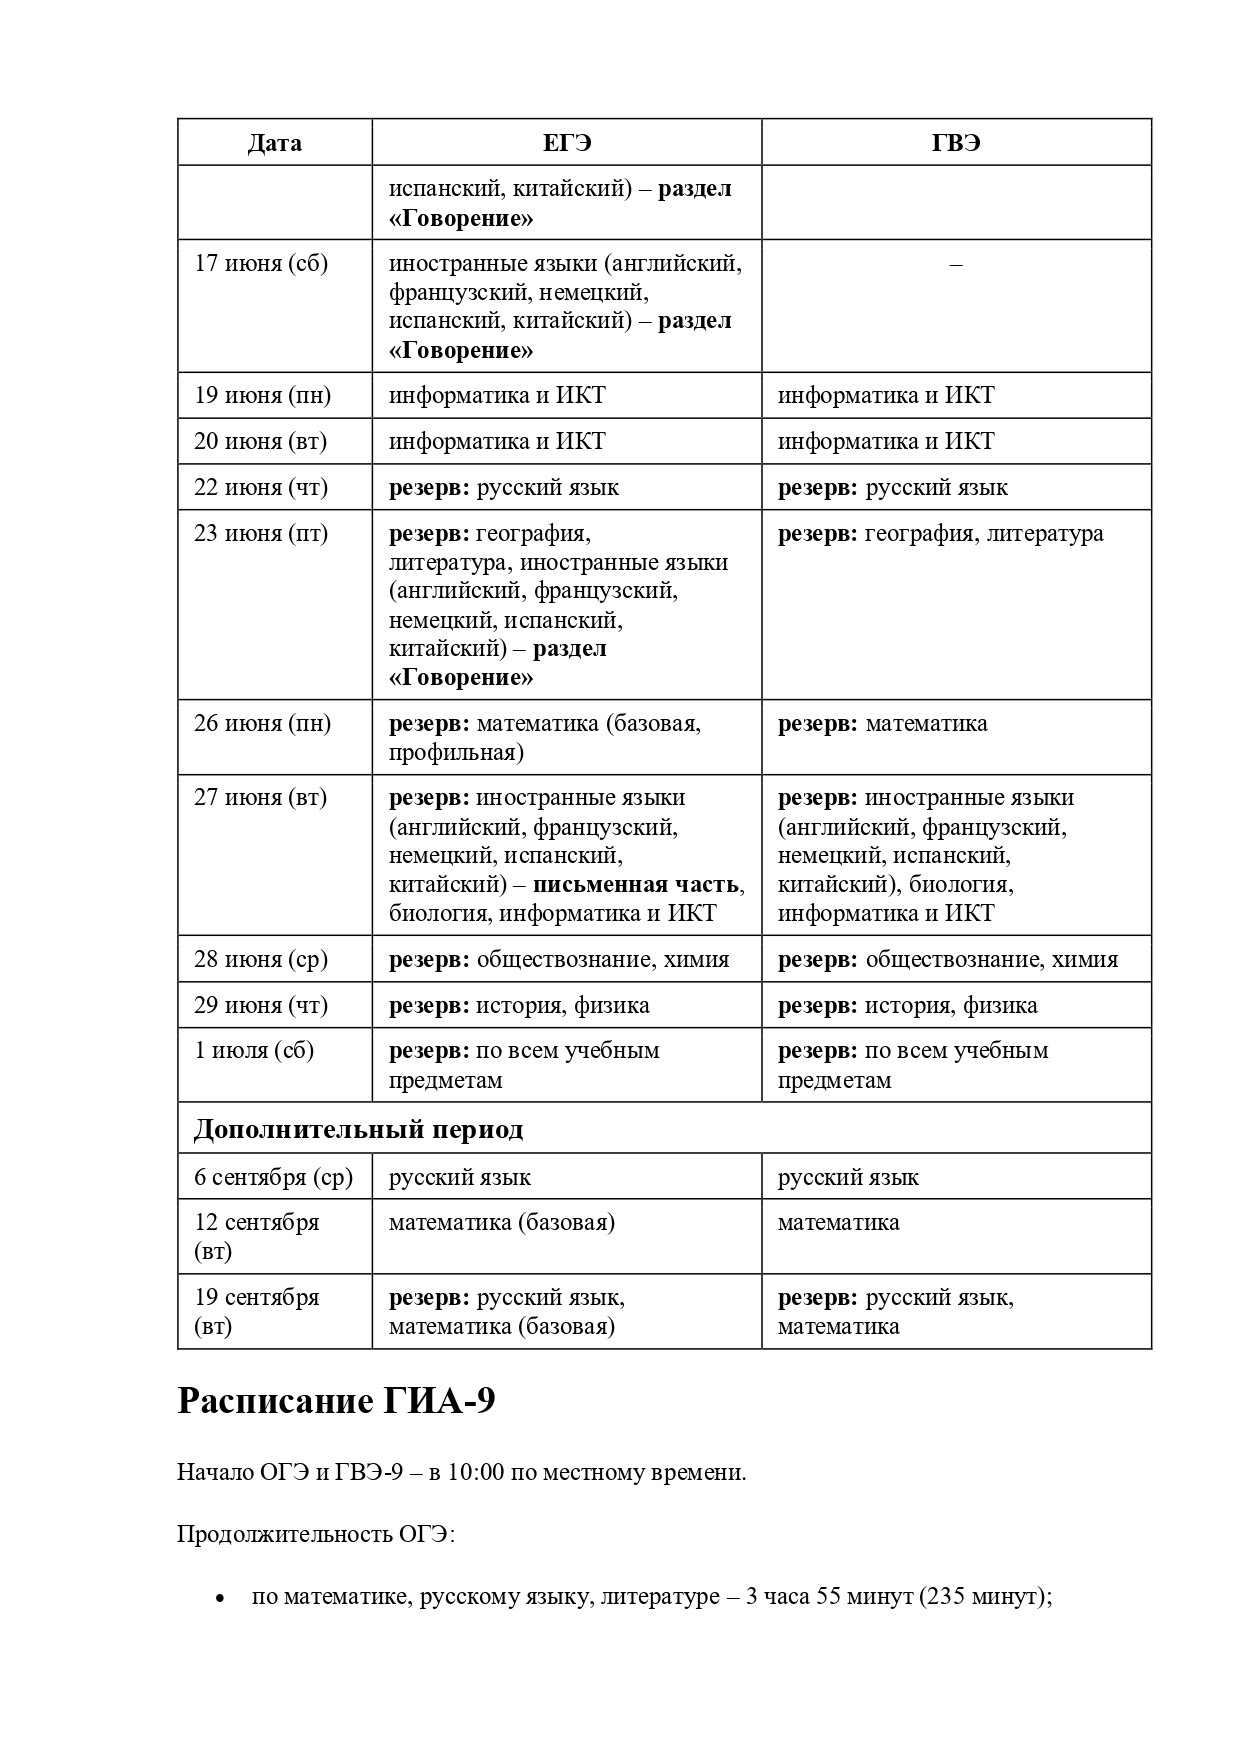 Расписание-ГИА-2023_page-0003